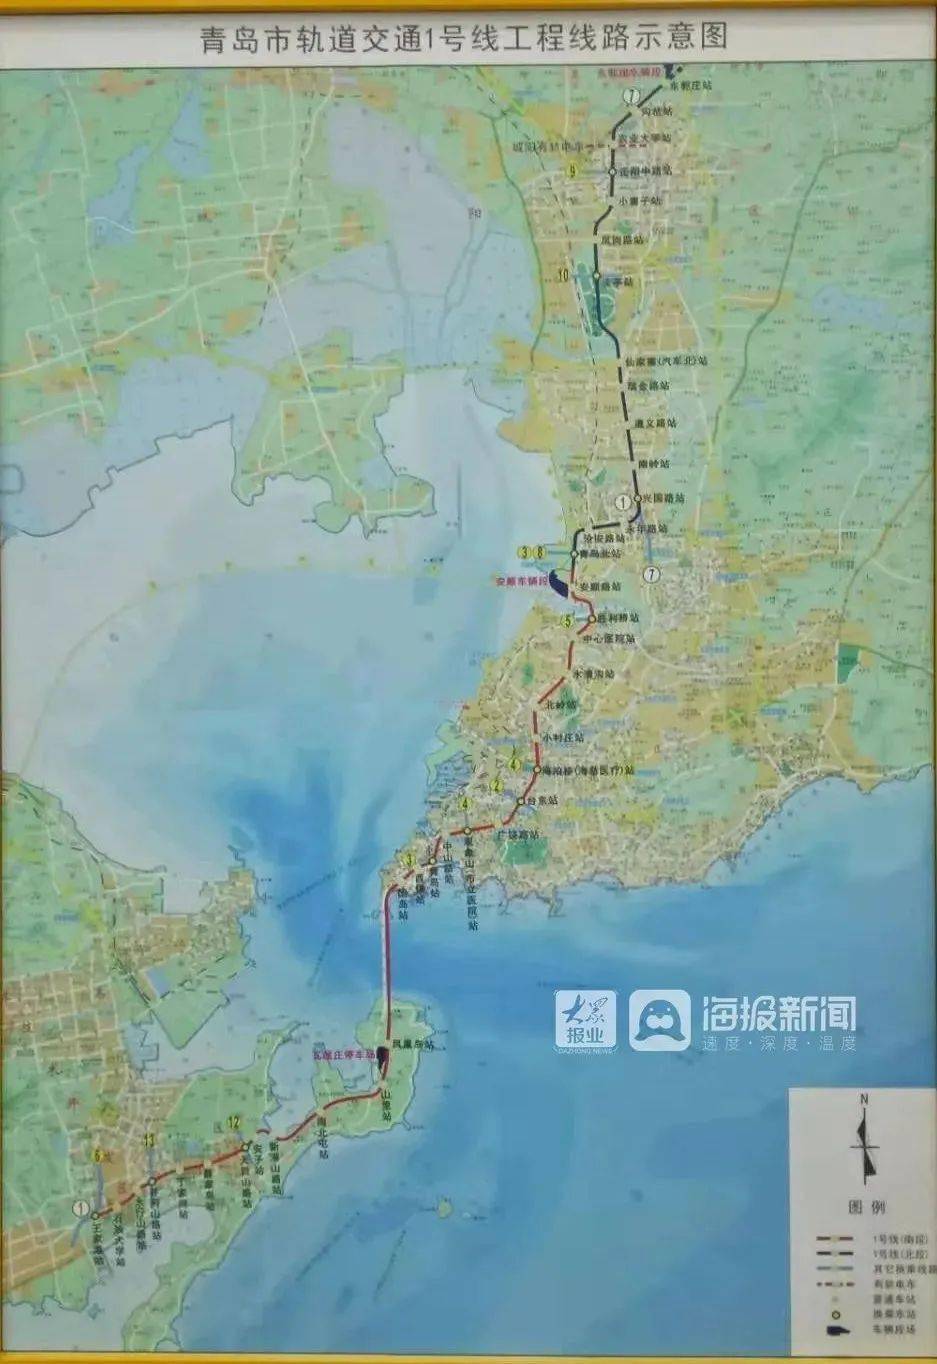 地铁来喽青岛地铁1号线北段8号线北段双线通车